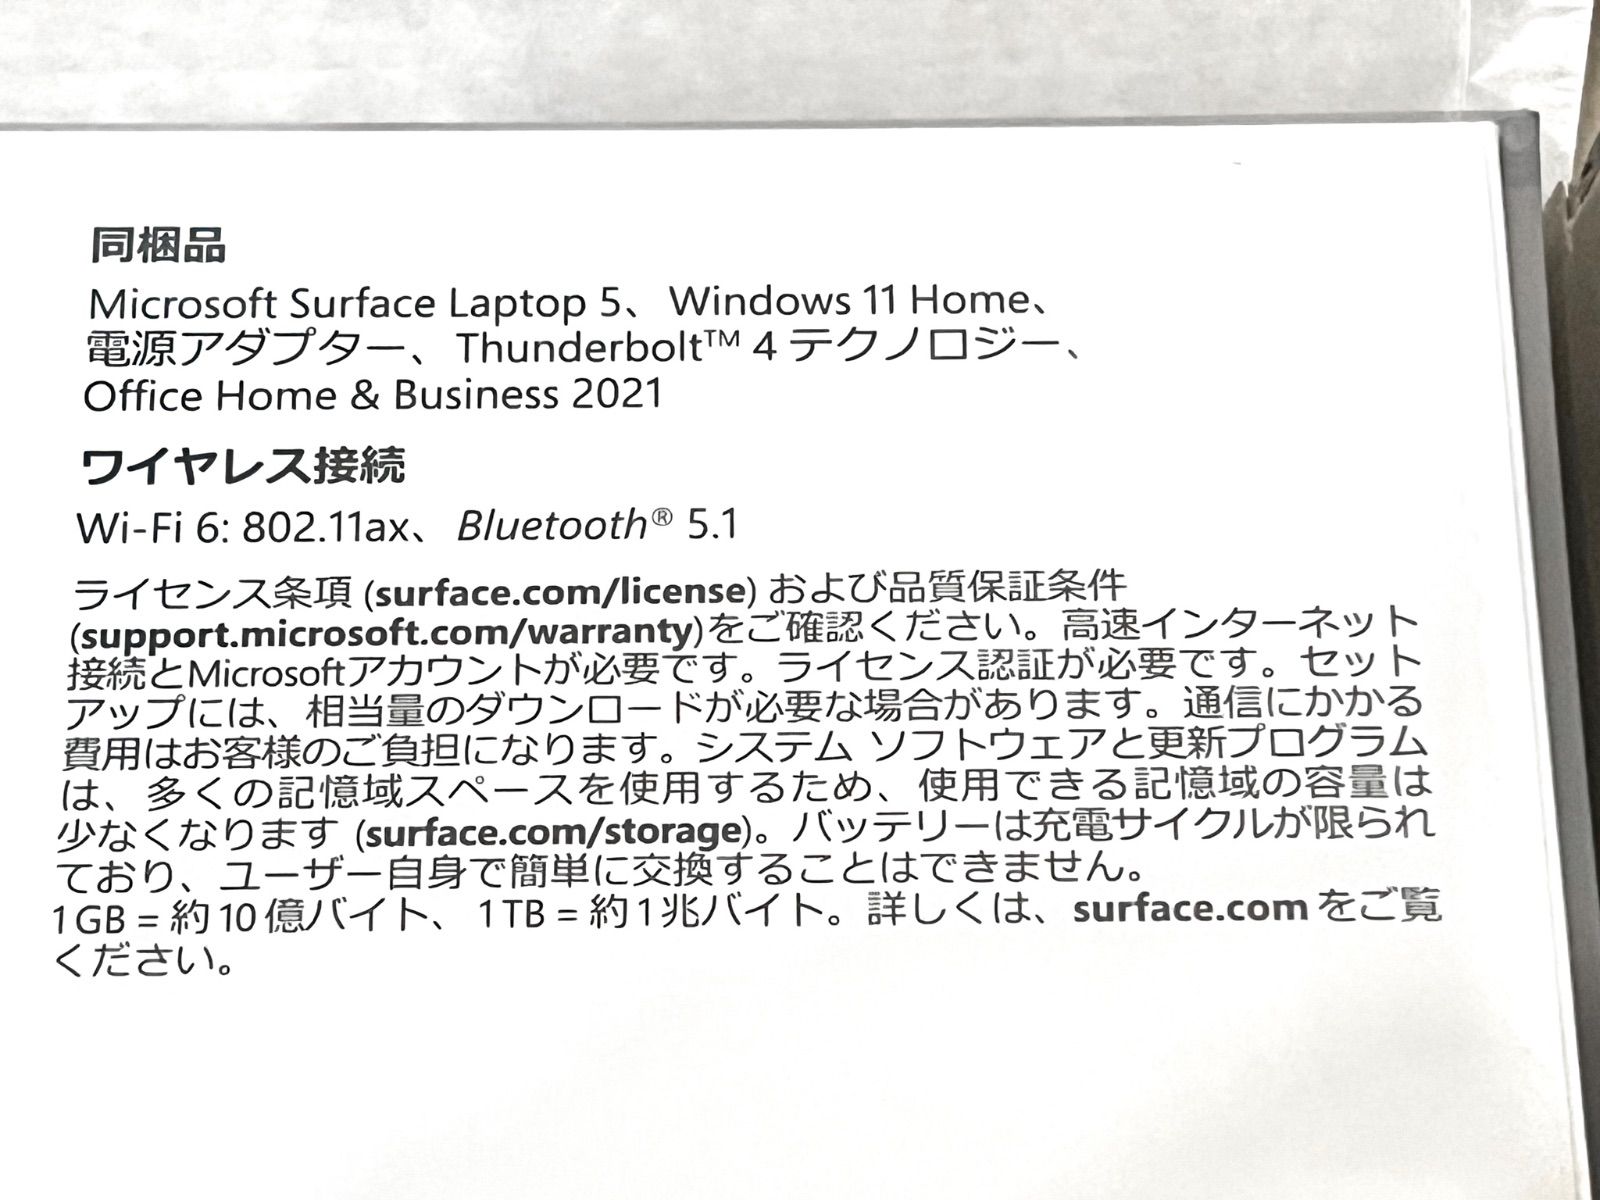 新品未開封品】マイクロソフト/Surface Laptop 5/13.5型 - golf le